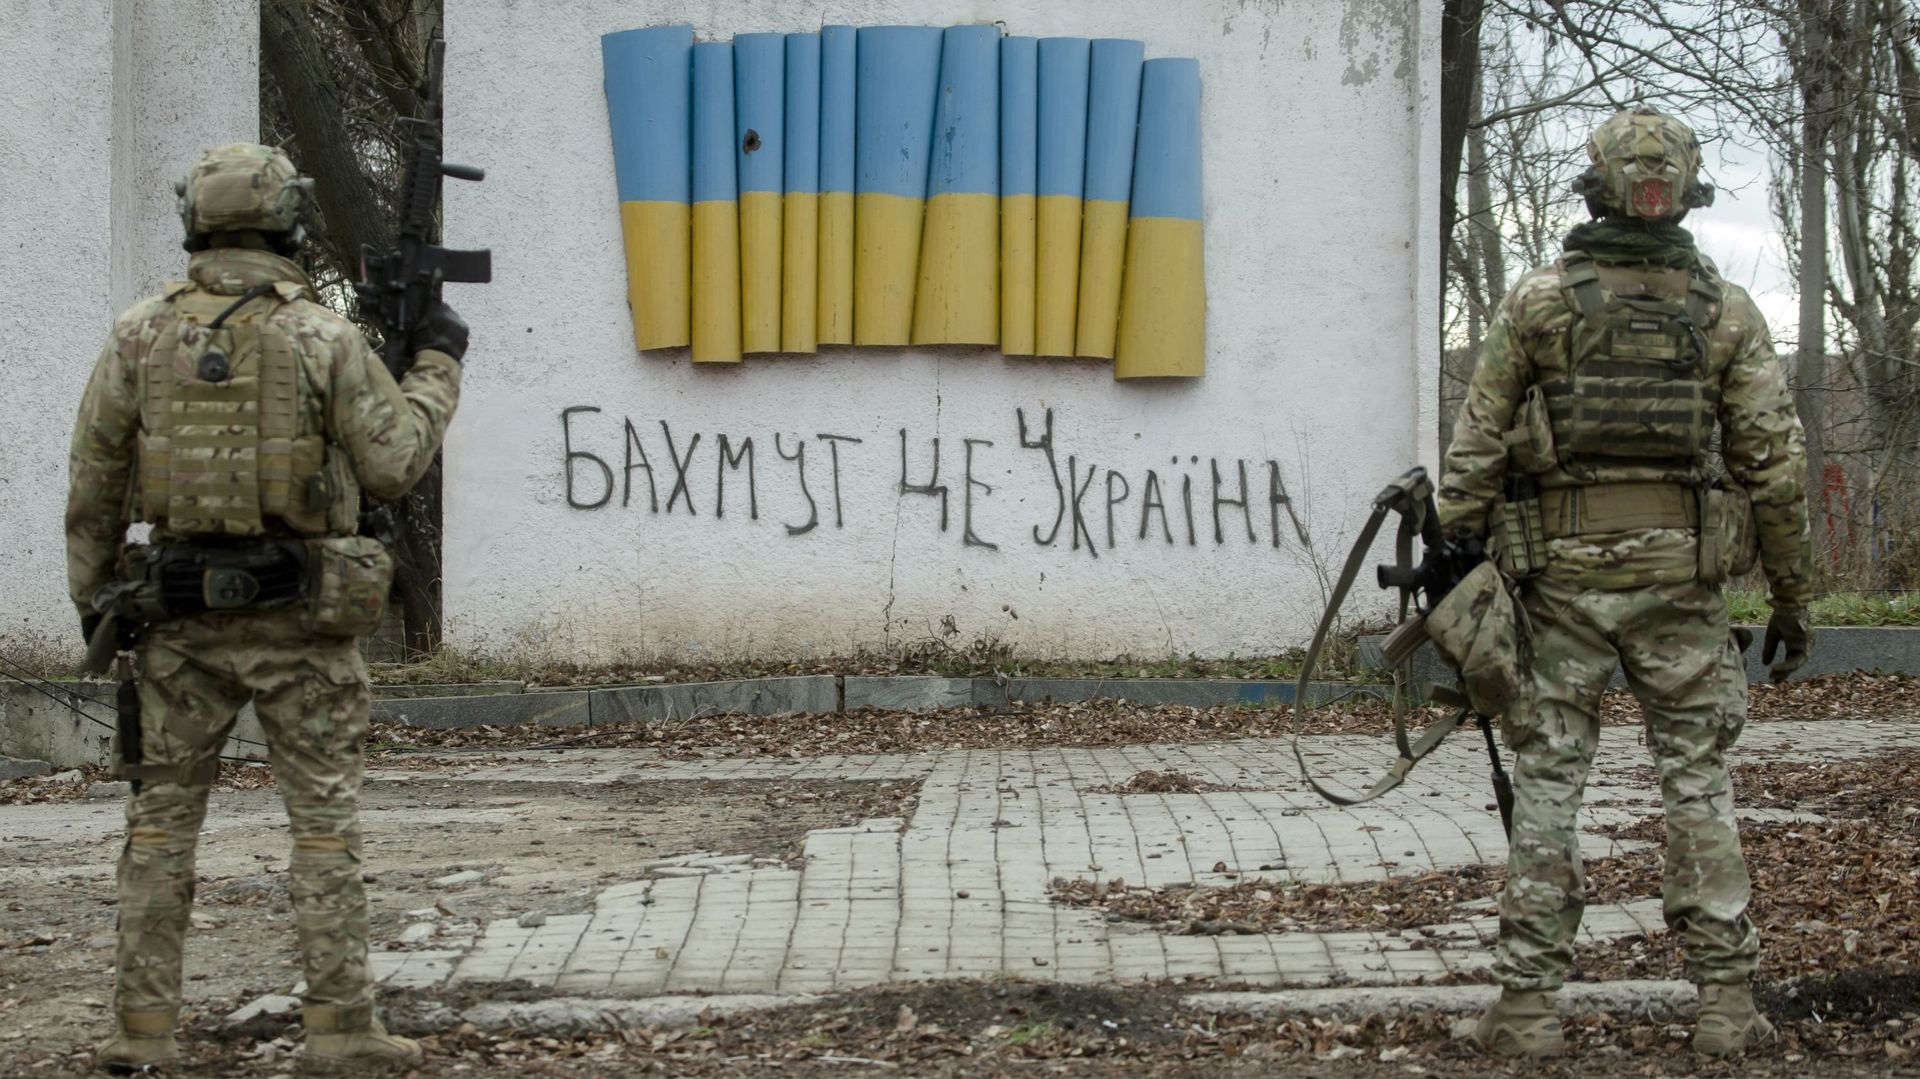 4 janvier 2023 à Bakhmut, Oblast de Donetsk. Des soldats ukrainiens se tiennent près d'une stèle avec un drapeau ukrainien et une inscription manuscrite disant: "Bakhmut est l'Ukraine".